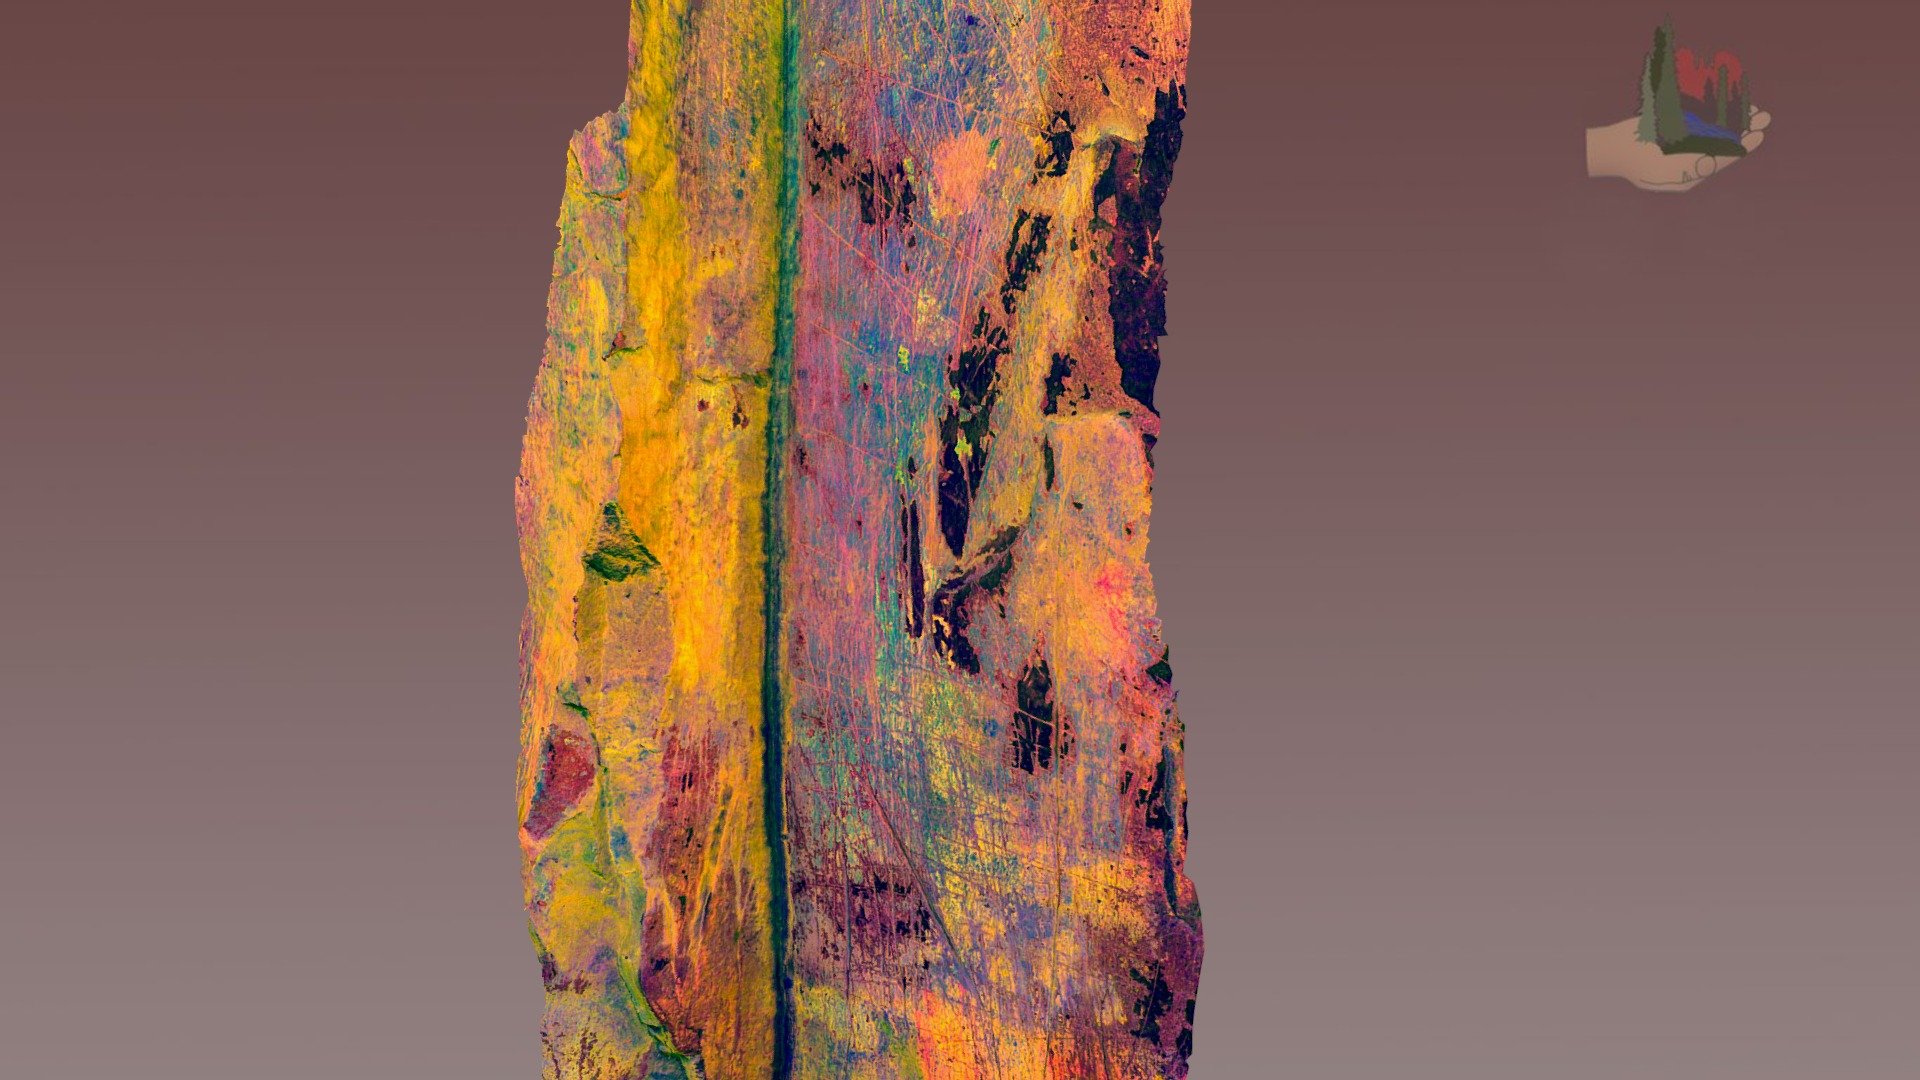 32b9950 fs1862ybk palatki grotto panel 9 dstretch ybk - 3d model fofsedona muhtemelen eski arkaik öncesi küçük bir bölümünü karmaşık dizi Olası antik mağara resimleri, resim yazıları superpositioning-arkaik dönem geç 217 North 100 West apache görüntü bindirilmiş fs1862 kullanılan aynı giriş fotoğraf kullanır ama algoritma türleri boya süperpozisyon belirleyen renk varyasyonları geliştirmek işlenmiş kısmı devam eden proje sembolü kaşıma üzerine genç görüntüleri değerlendirmek ek bilgi red rock bölgesinde coconino ormanı internet sitelerinden bulunabileceği http wwwsedonaredrocktrailsorg wwwfsusdagov recmain Rekreasyon gönüllülük fırsatları diğer projeler wwwfriendsoftheforestsedonaorg oluşturma modelleri dahil olmak üzere orman 3D print model - Mito3D